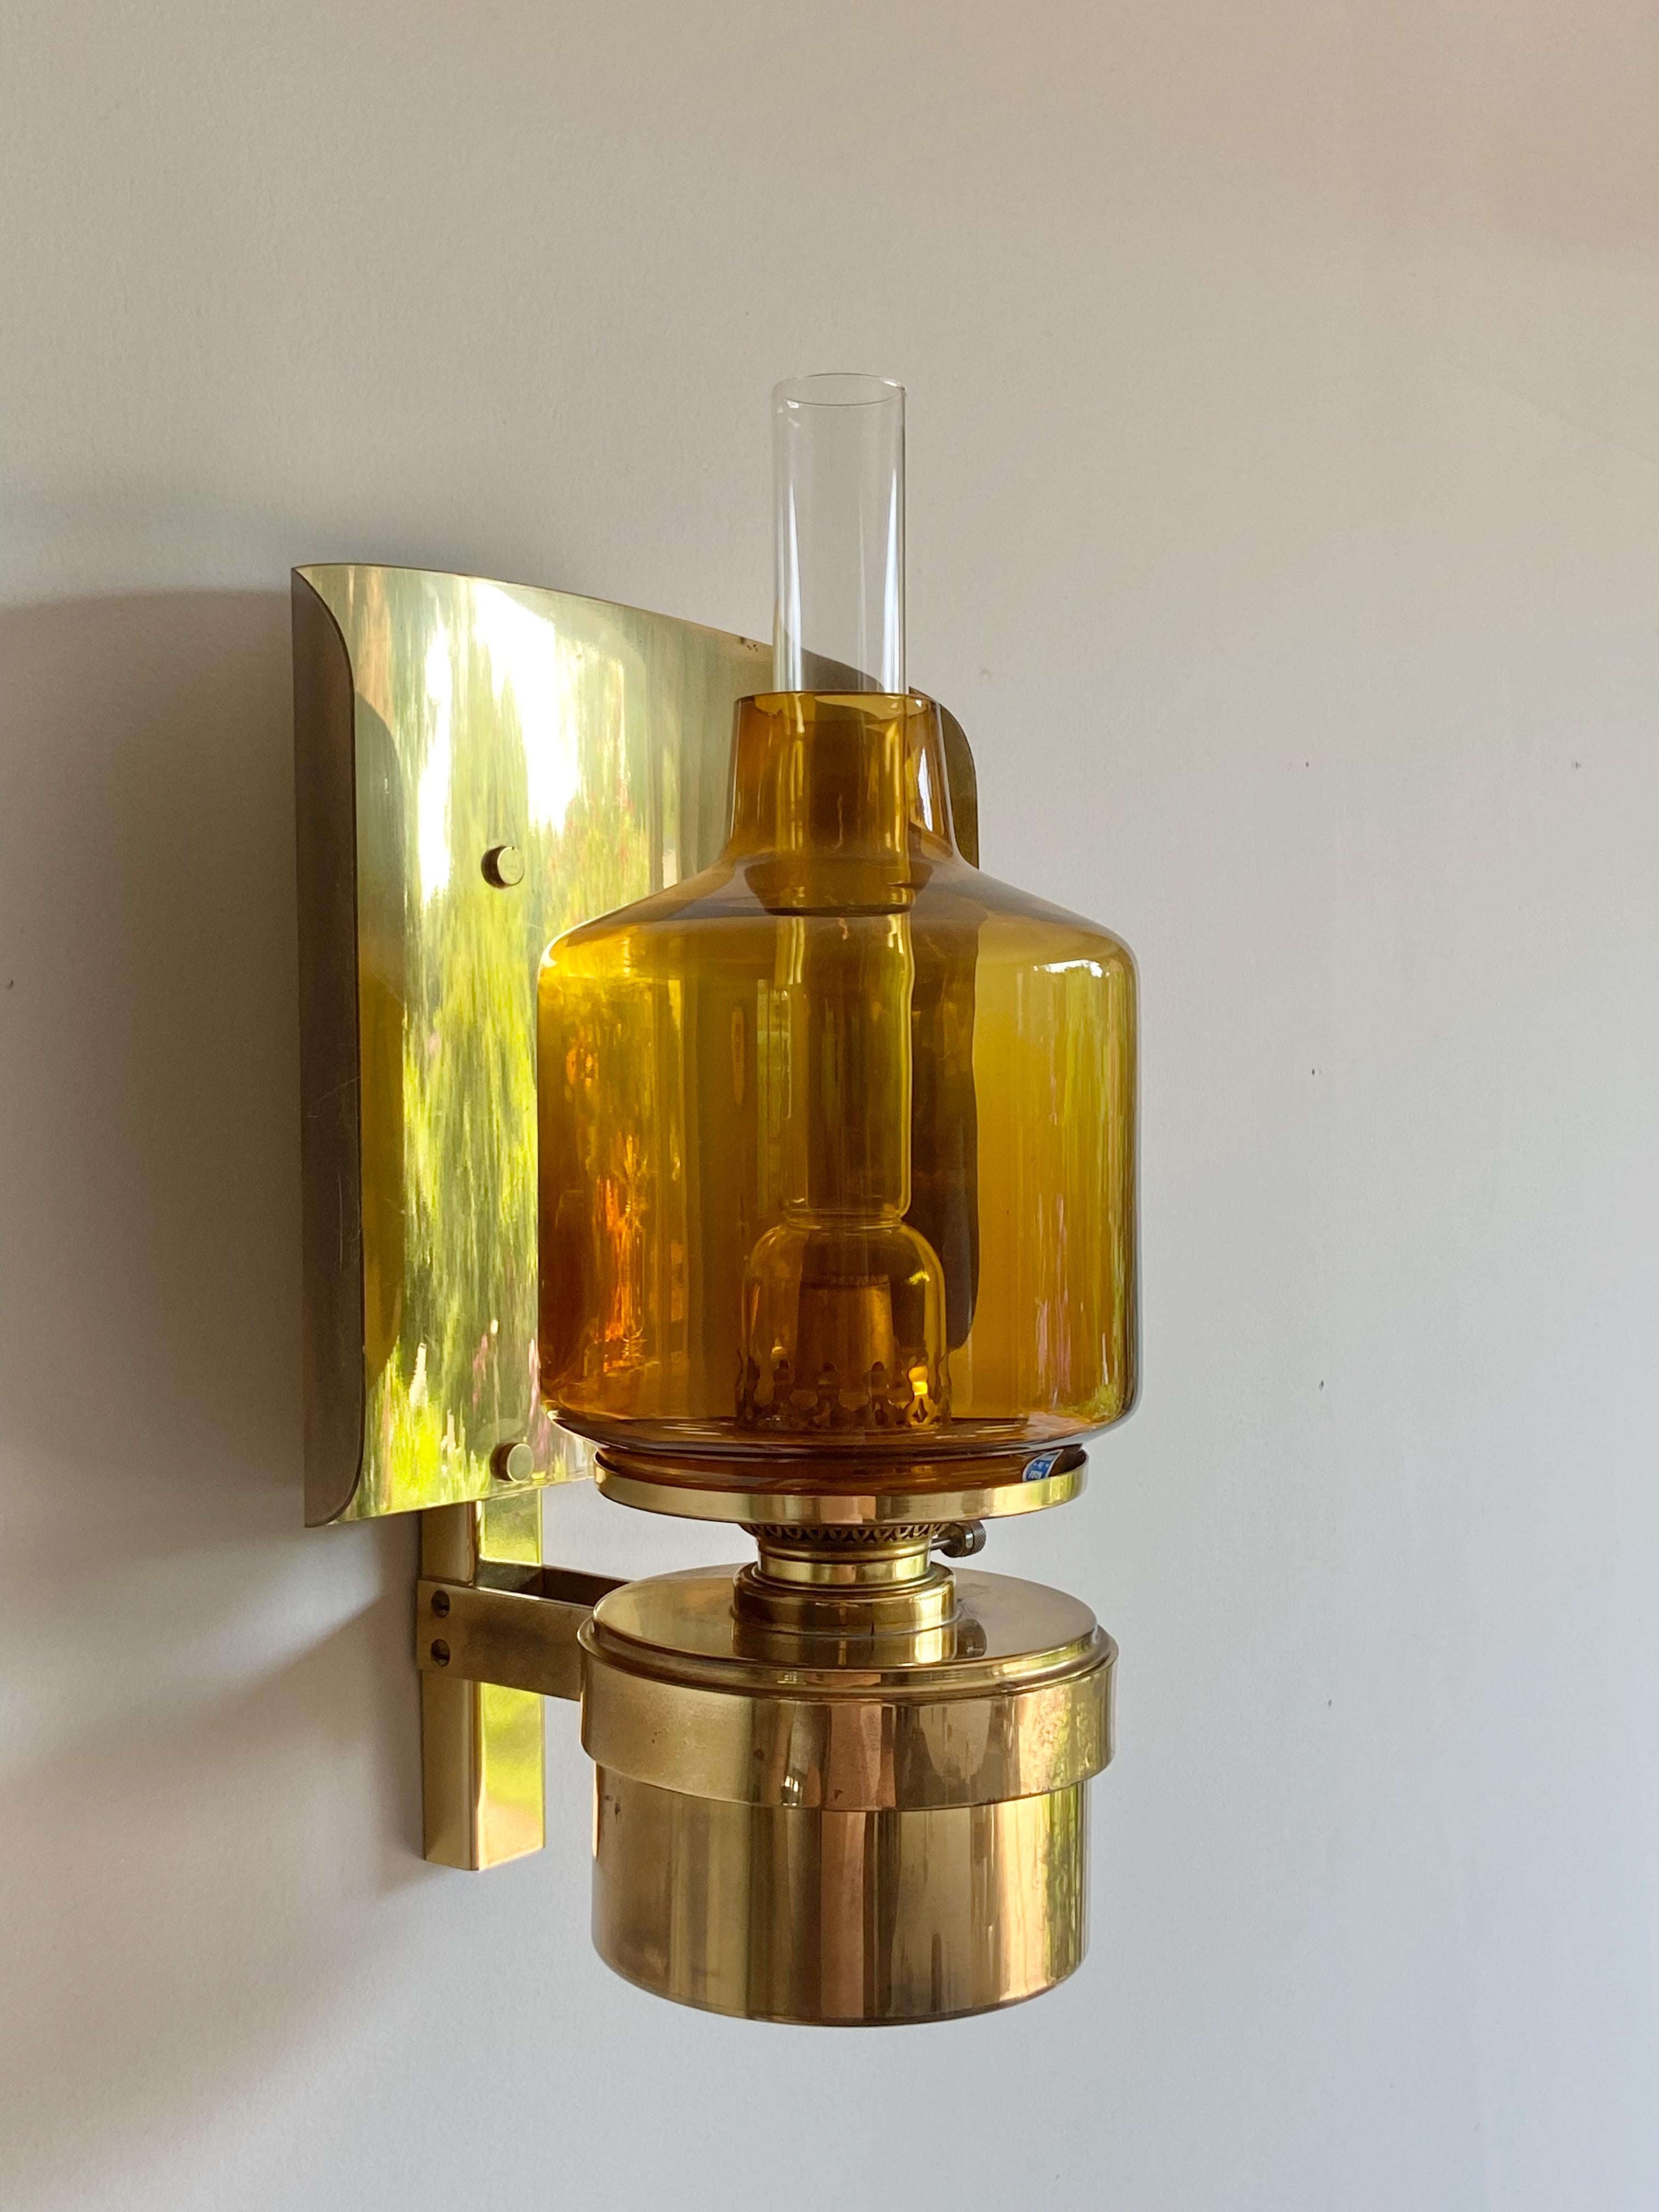 Très belle & rare lampe à huile Typ L137 Hans-Agne Jakobsson en verre ambré et laiton.
Pas de bosses, pas de dommages avec une belle patine.

 
 